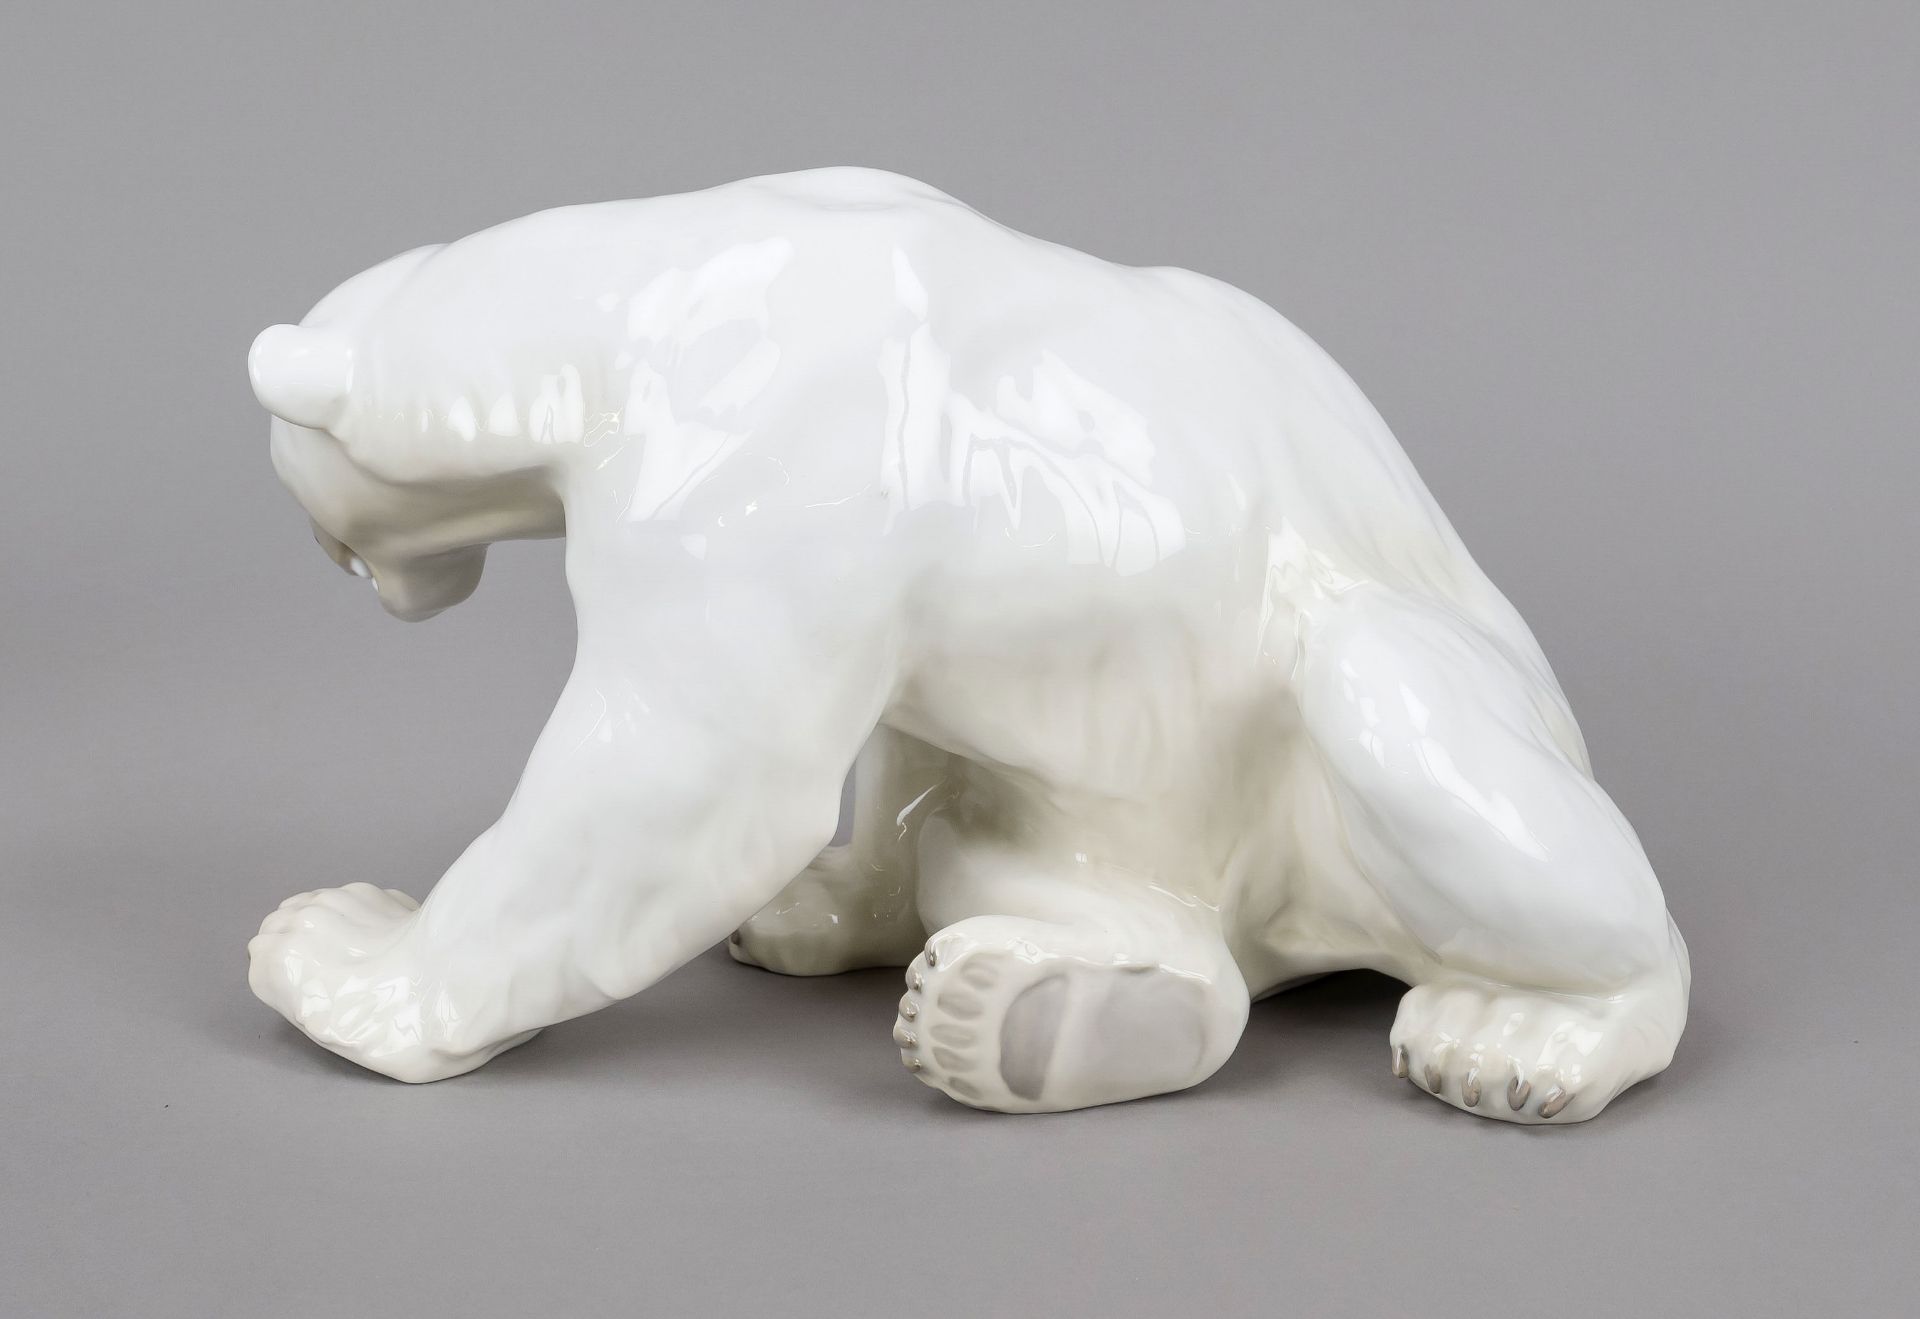 Large polar bear, Bing & Gröndahl, Copenhagen, mark 1959-1960, design Knud Kyhn 1914, model no. - Image 2 of 2